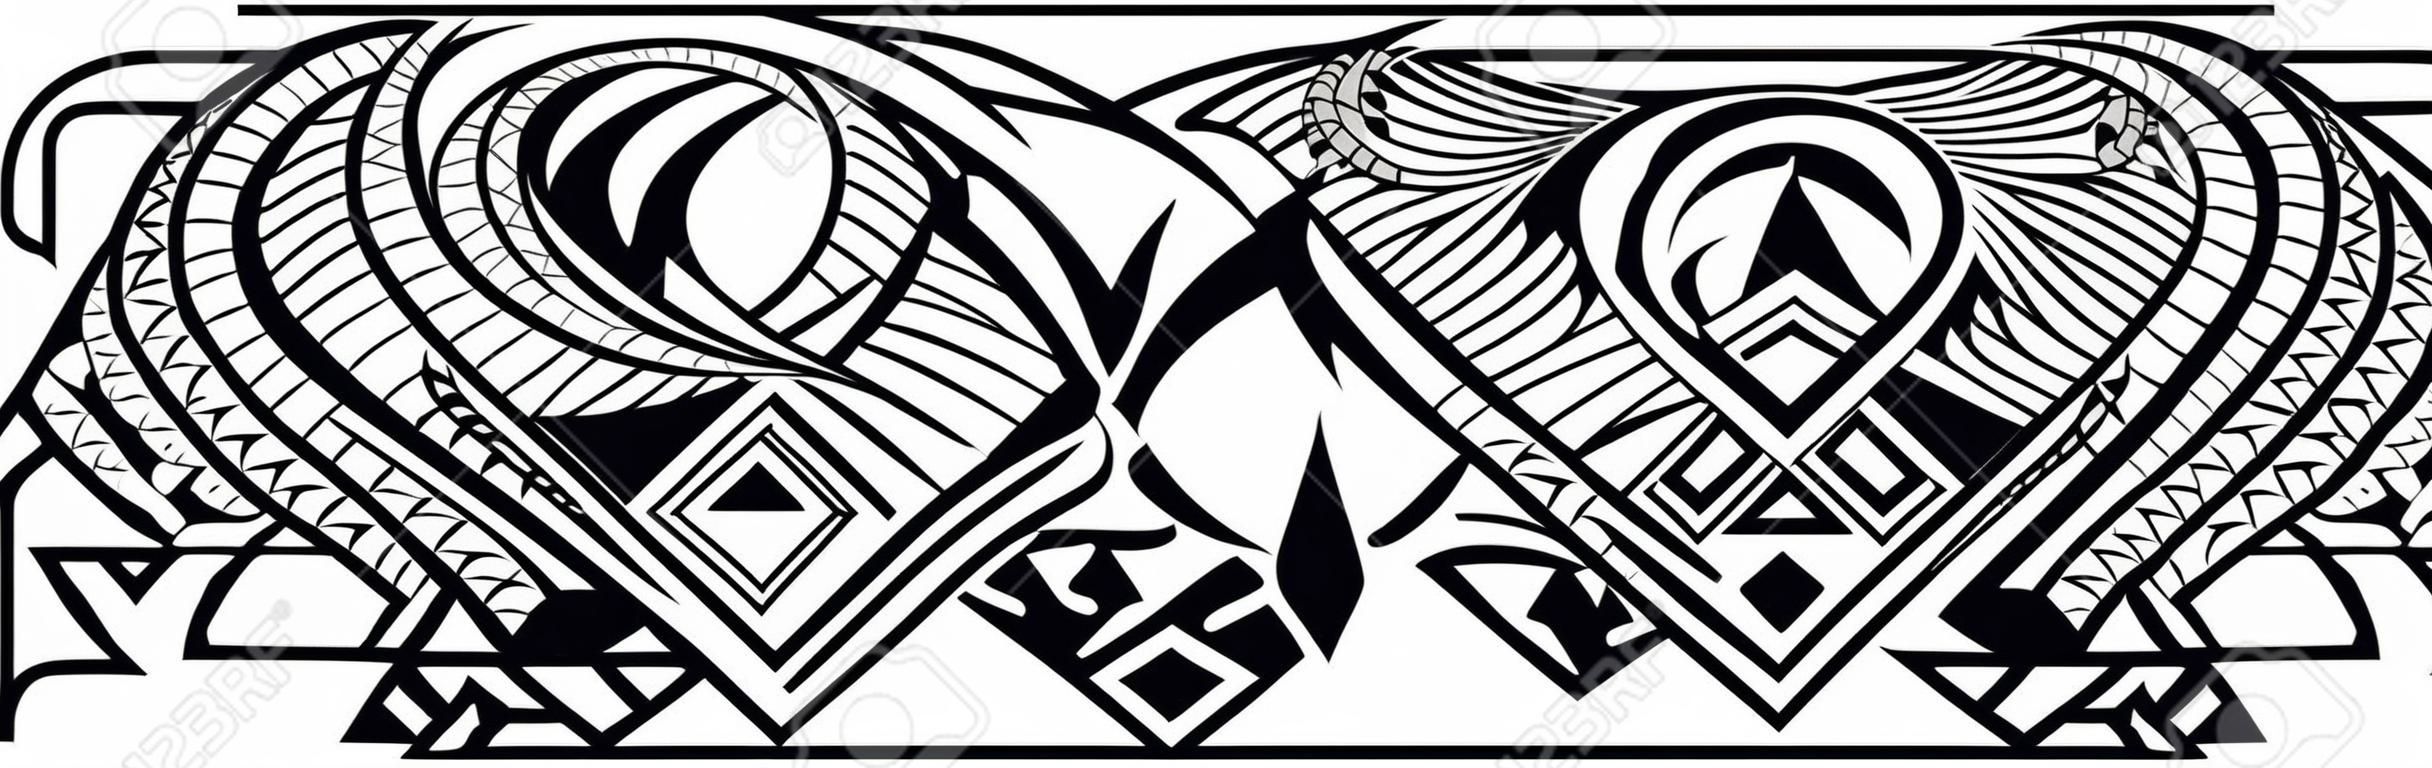 폴리네시아 문신 패턴 마오리, 사모아 장식 테두리, 윤리적 부족 템플릿 벡터.